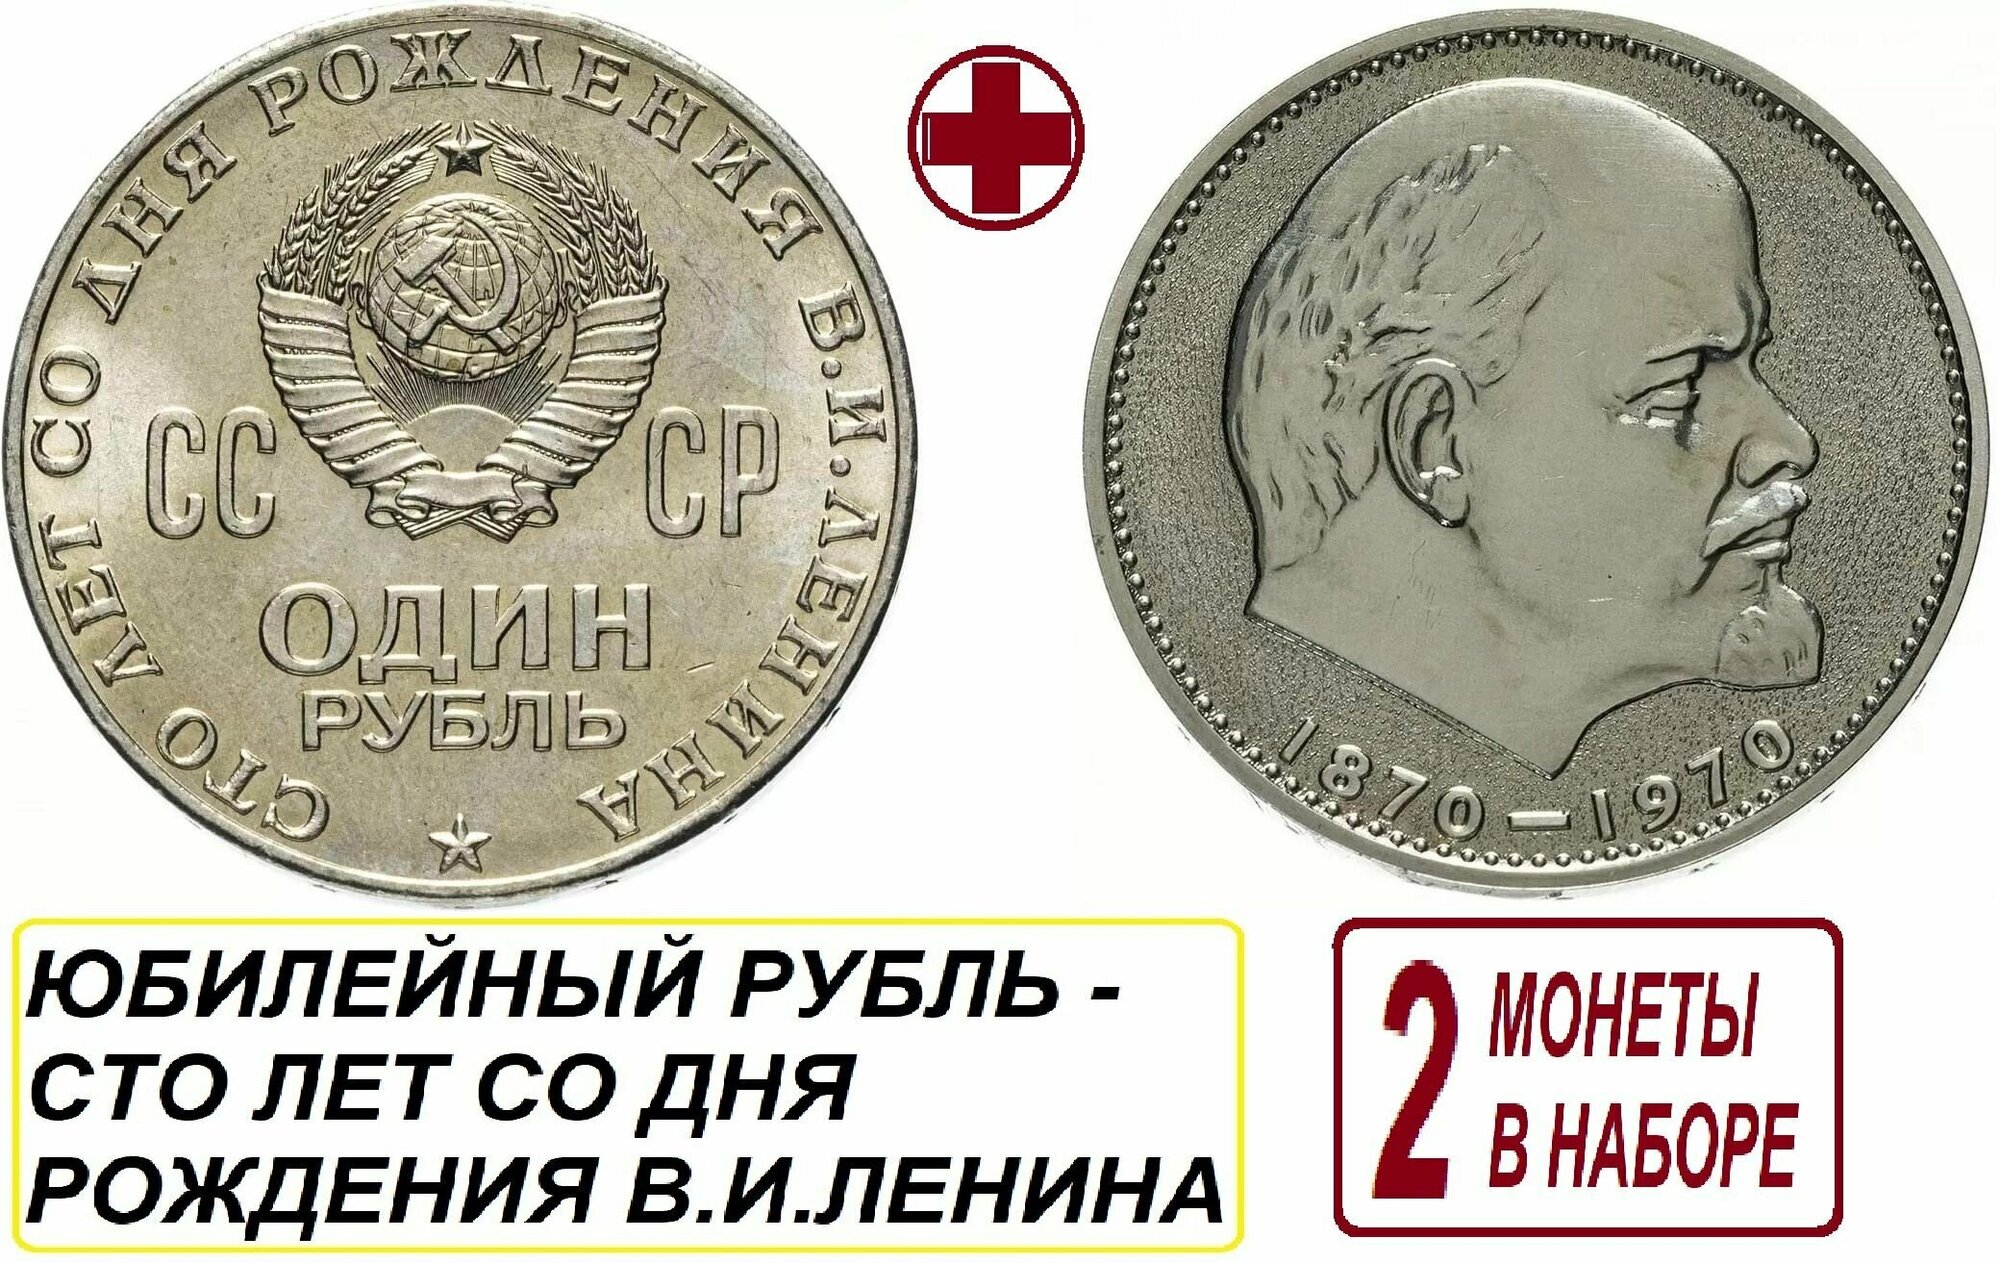 Монета СССР Рубль 1970 года, памятная - сто лет со дня рождения В. И. Ленина - набор из 2 монет